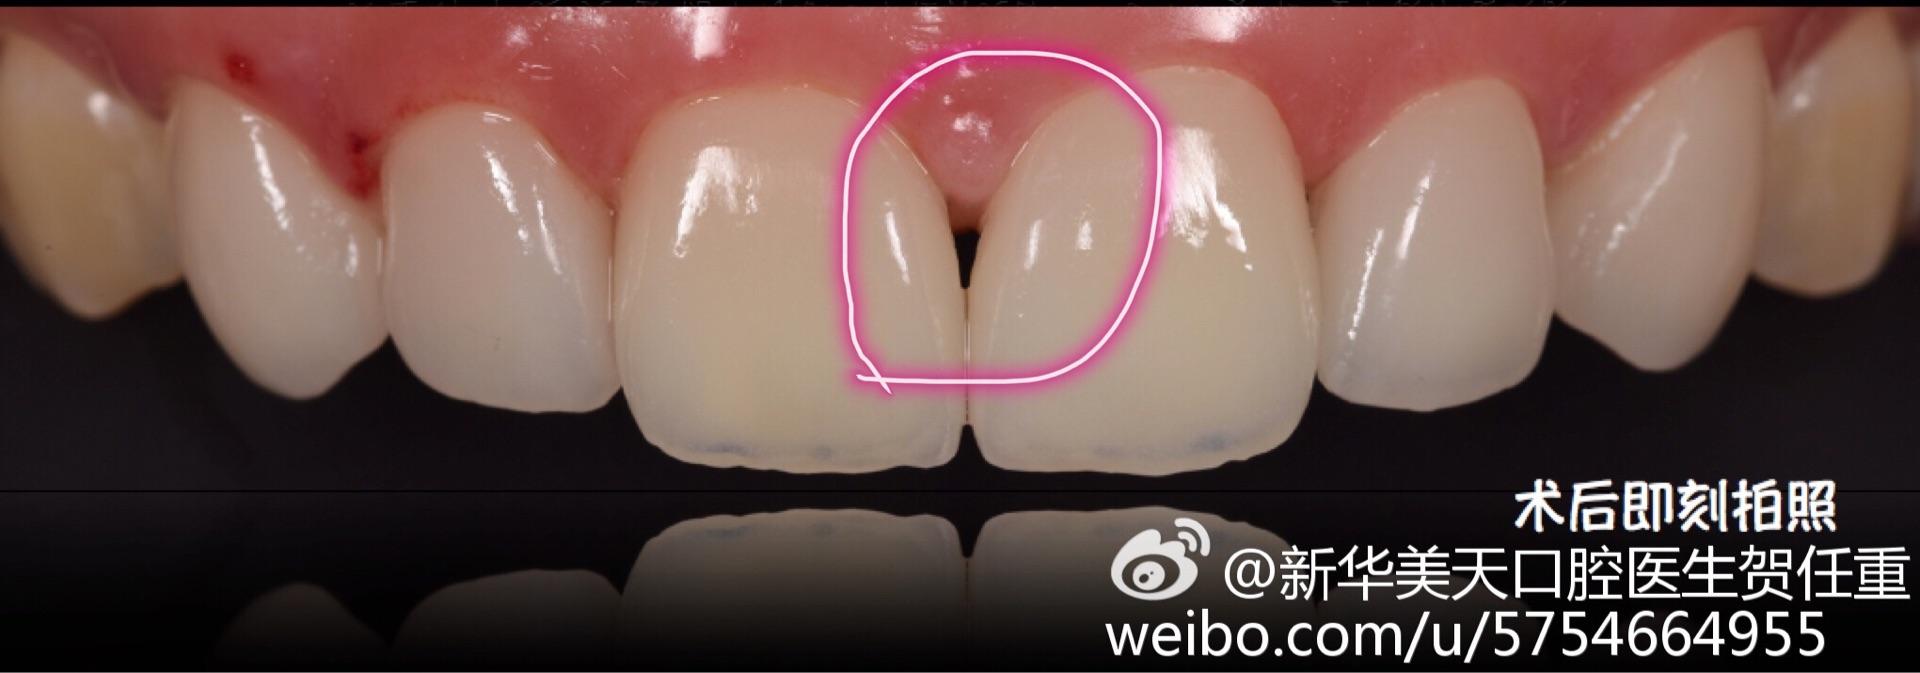 可以压入龈沟底清洁龈沟区,但不能压入沟底以下的组织,以防出现牙龈